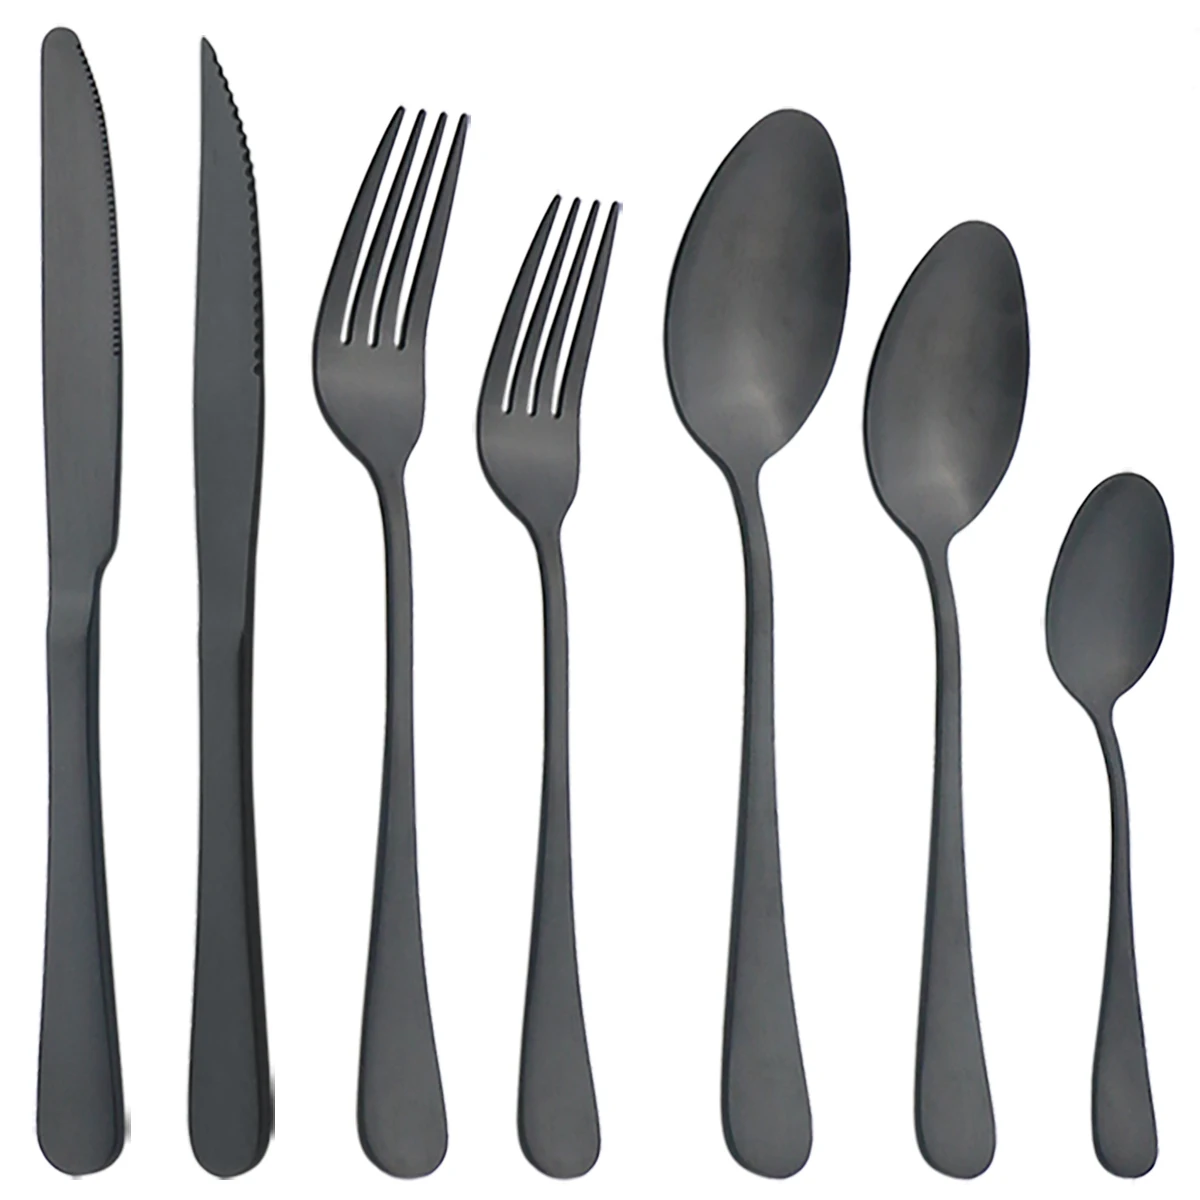 

Spoon Dinnerware Silverware Stainless Steel Flatware Tableware Set Matte Black Cutlery Set Steak Knives Dessert Forks Coffee Tea